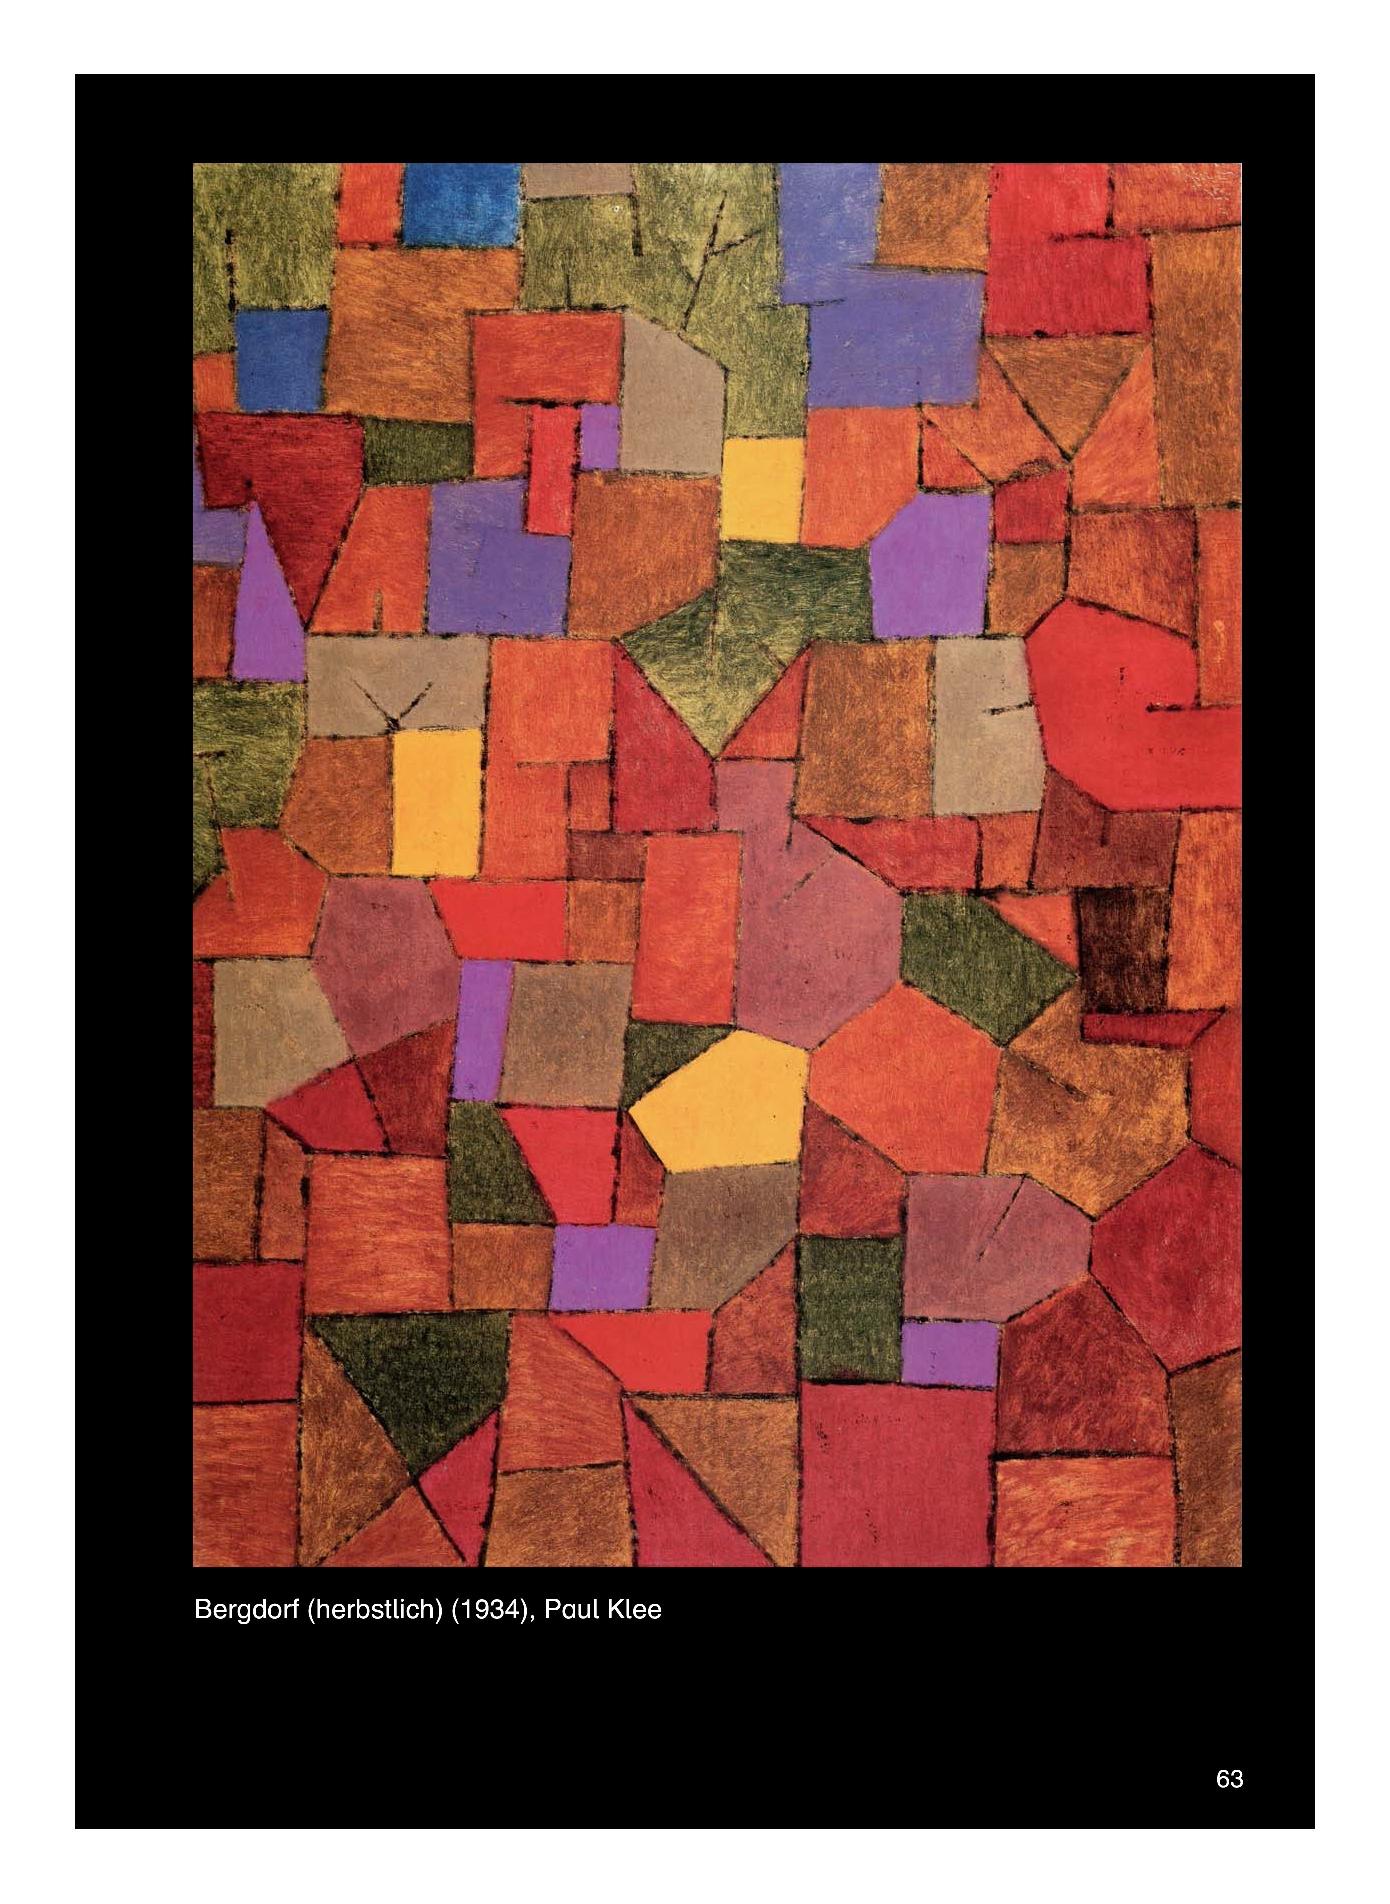 Kunst_Unterrichtseinheit zumThema _Bergdorf (herbstlich)_ von Paul Klee mit biografischen Hinweisen zum Künstler